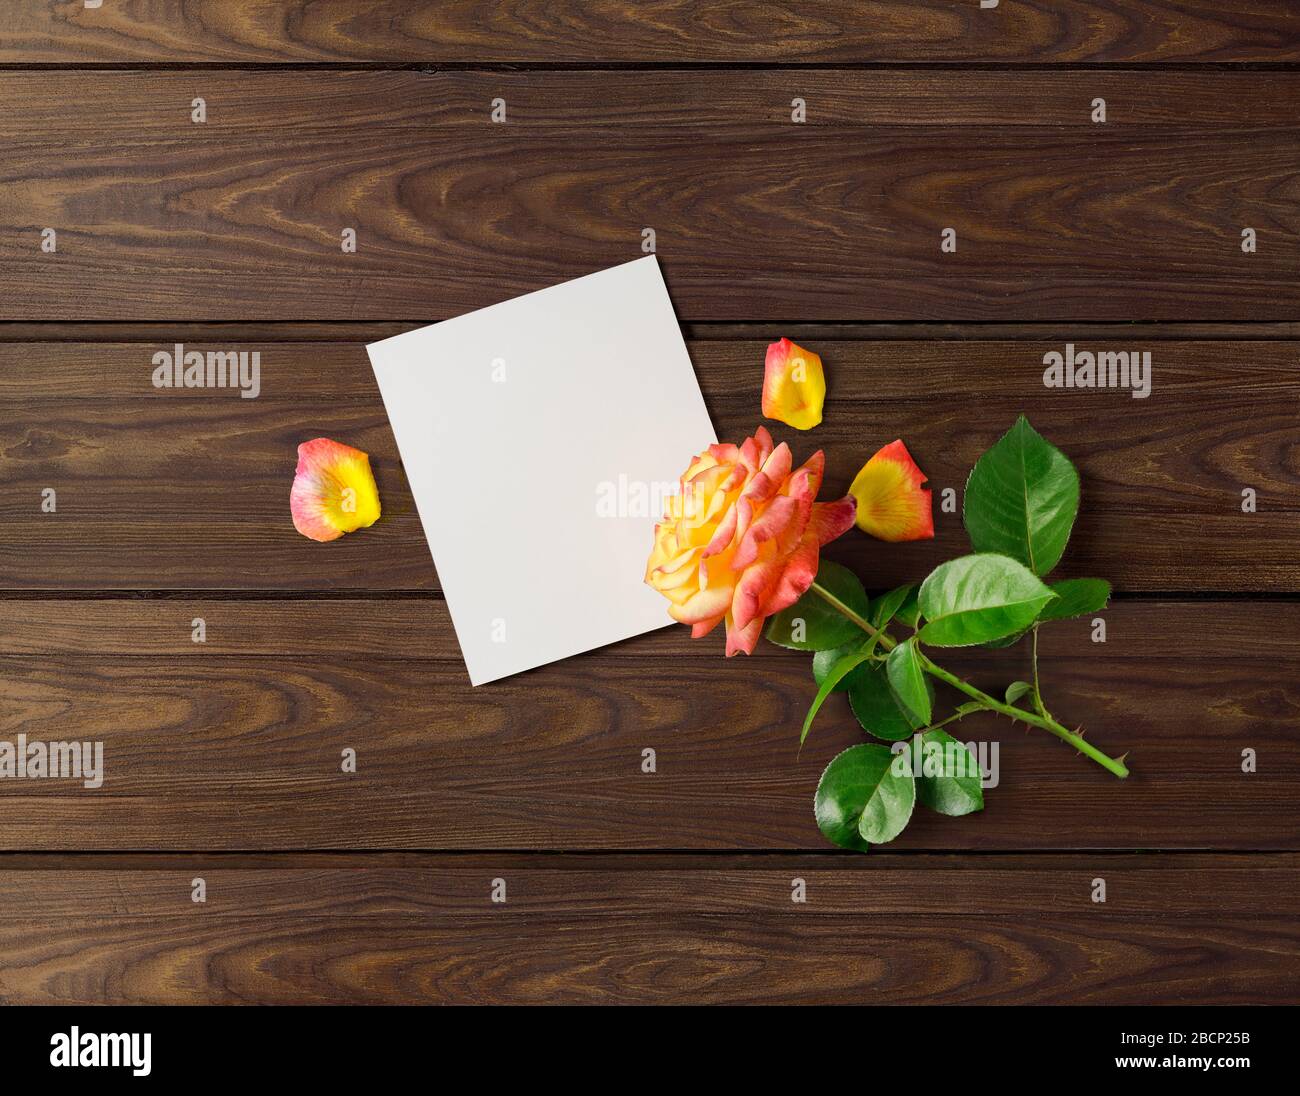 Gestalterisches Konzeptfoto Blumenrosen-Pflanze-Weihnachtsgeschenk Muttertag auf braunem Holzhintergrund. Stockfoto